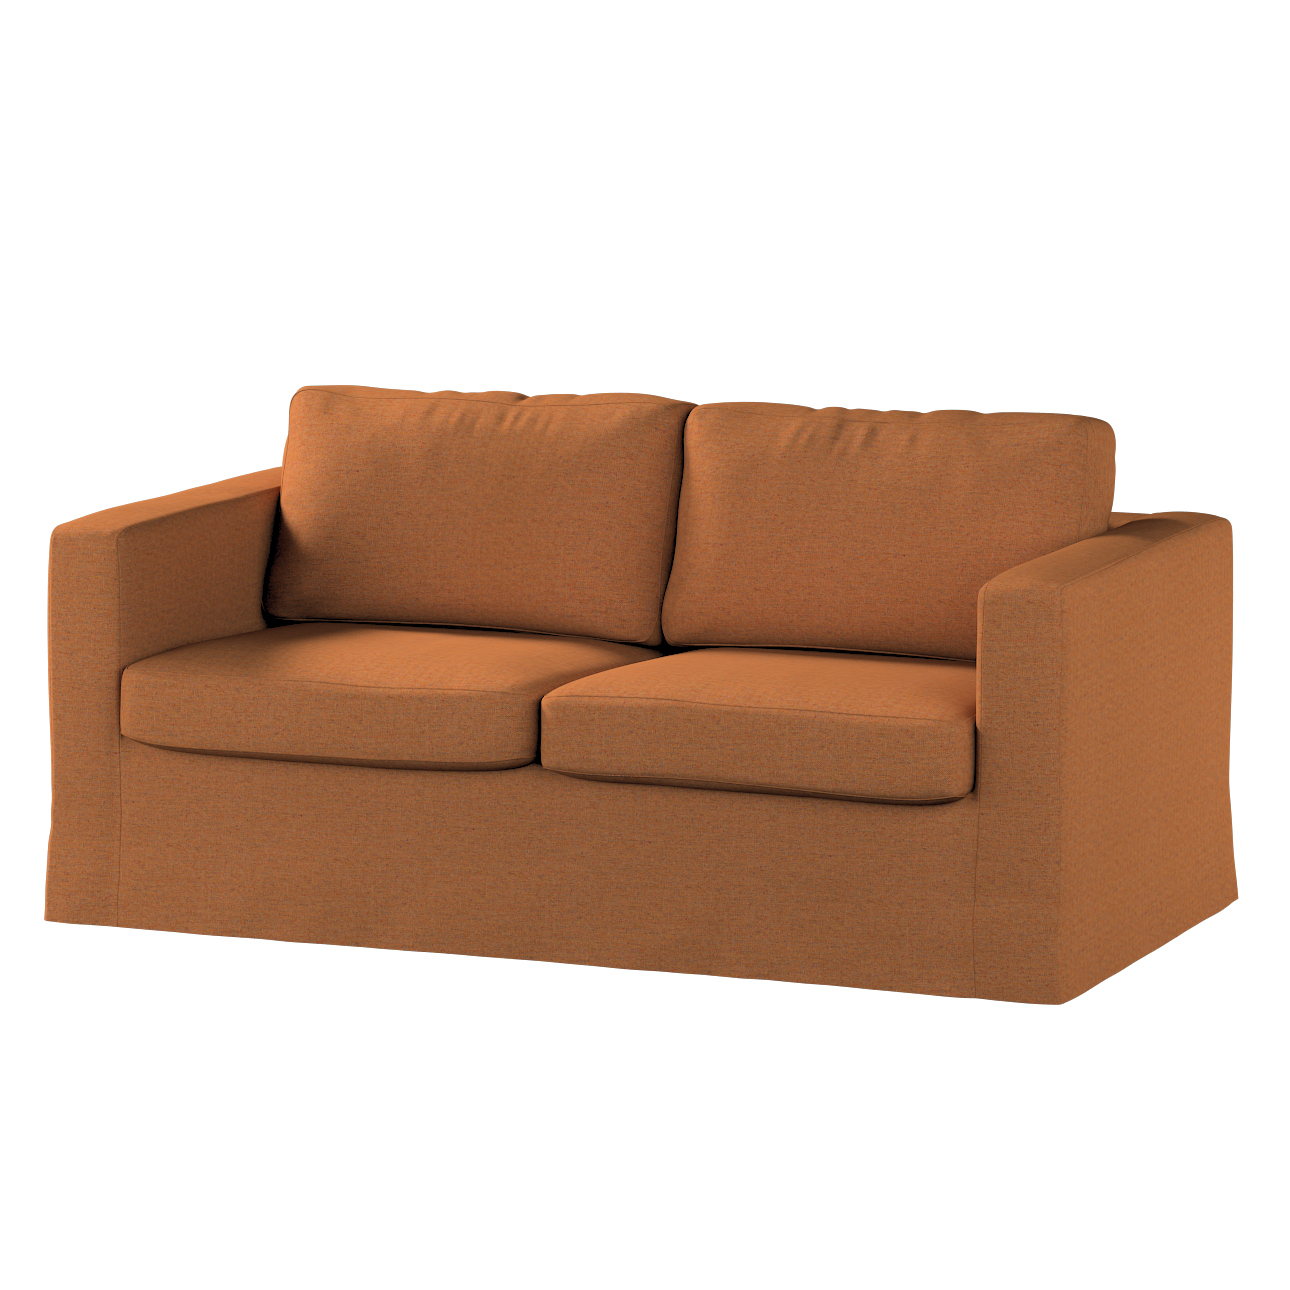 Bezug für Karlstad 2-Sitzer Sofa nicht ausklappbar, lang, orange, Sofahusse günstig online kaufen